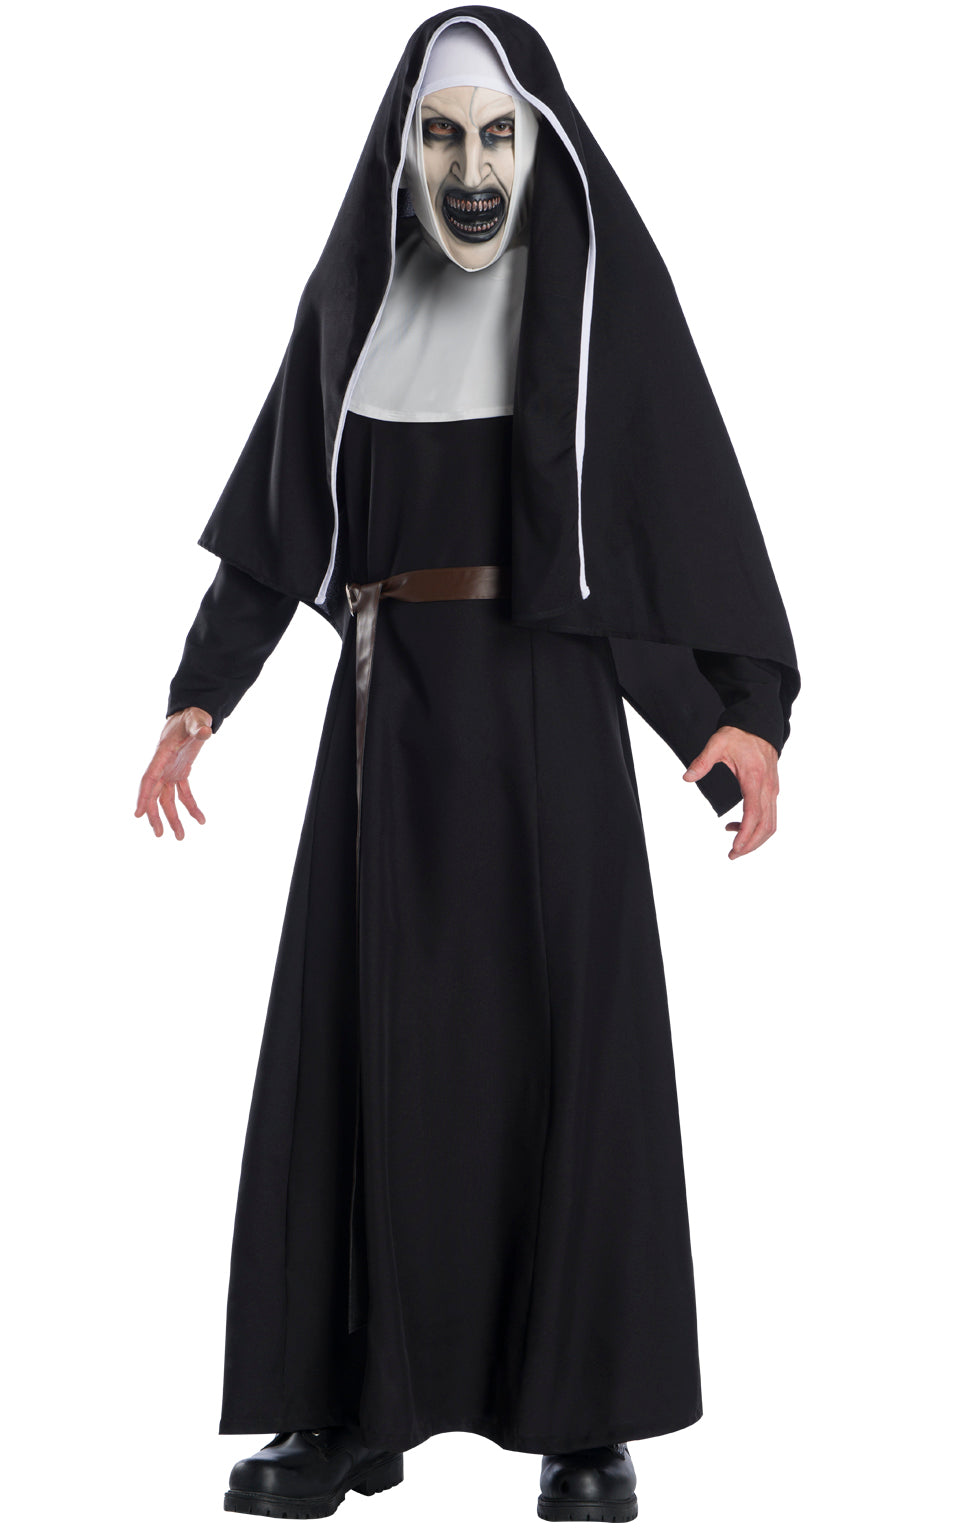 Deluxe The Nun Ladies Costume